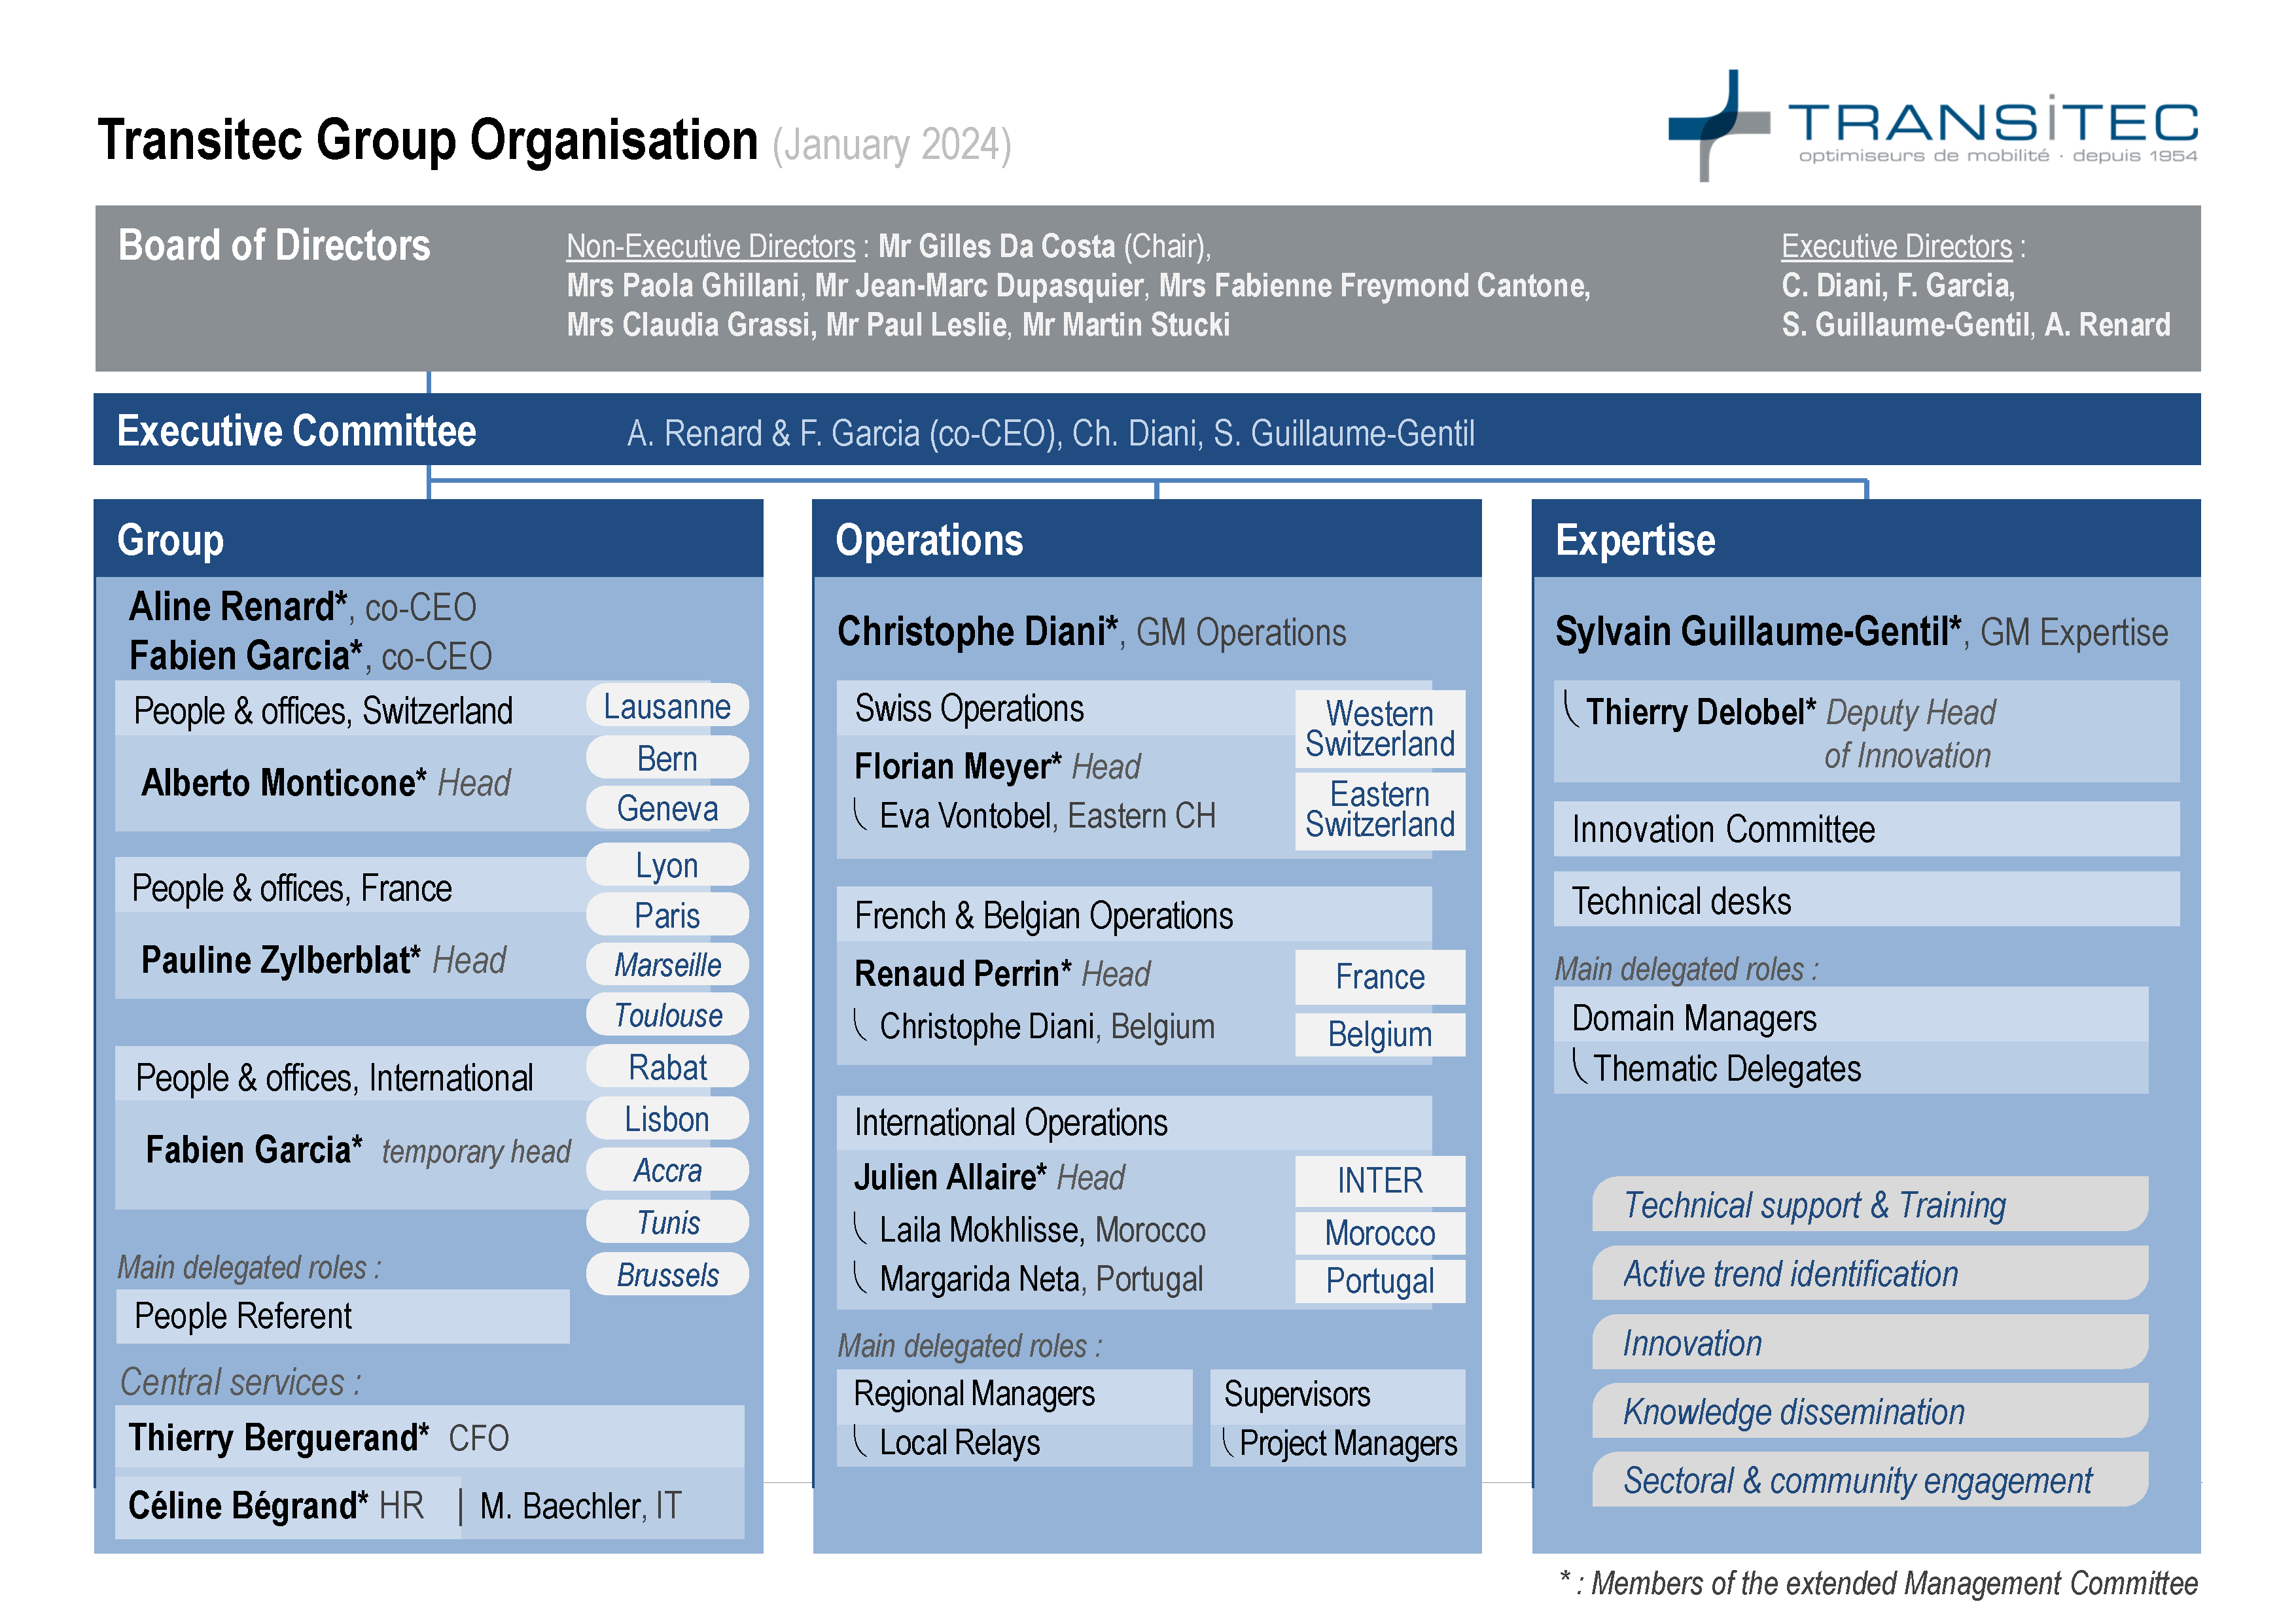 A0 5 Organigramme Transitec 2024 01 EN